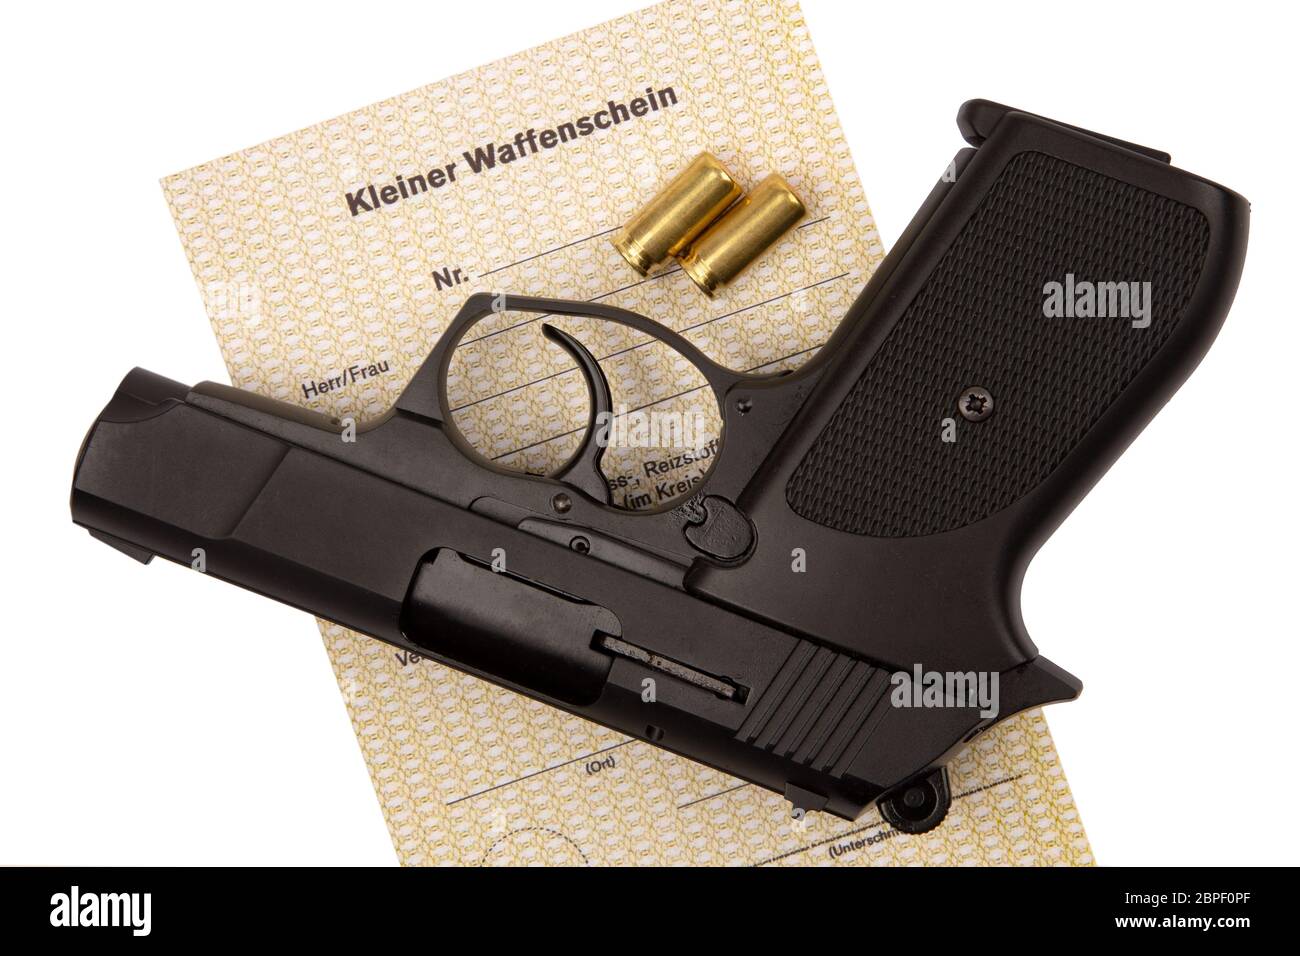 https://c8.alamy.com/compde/2bpf0pf/deutsche-text-kleine-waffe-certificateand-schrotflinte-in-deutschland-erlaubt-schrotflinte-und-gas-pistolen-2bpf0pf.jpg